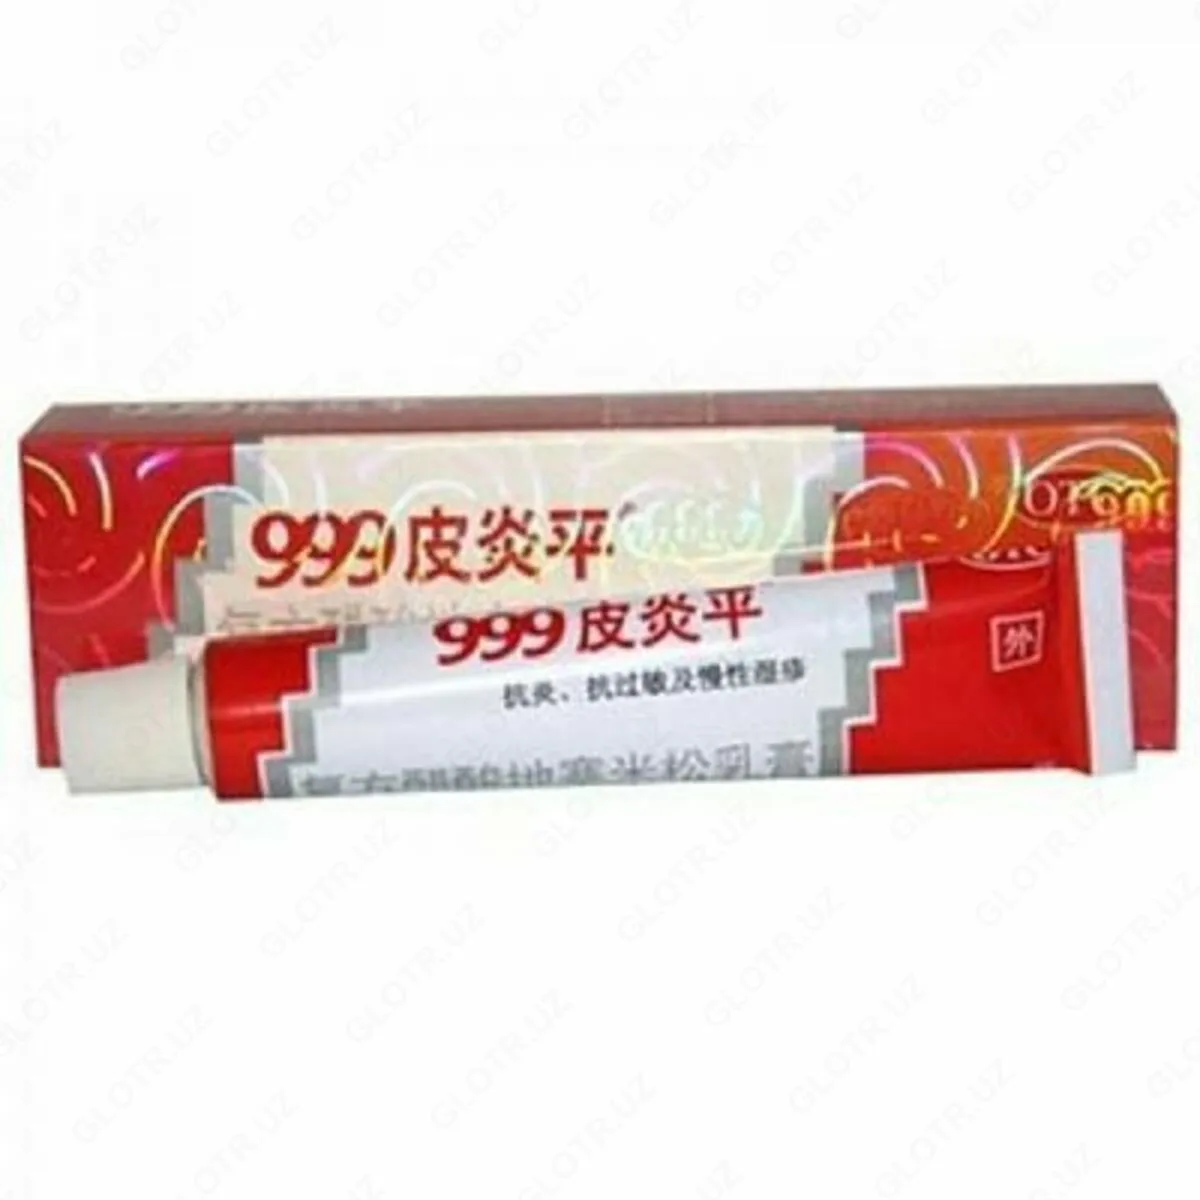 Китайская Мазь Пианпин 999 для лечения псориаза и кожных заболеваний#2